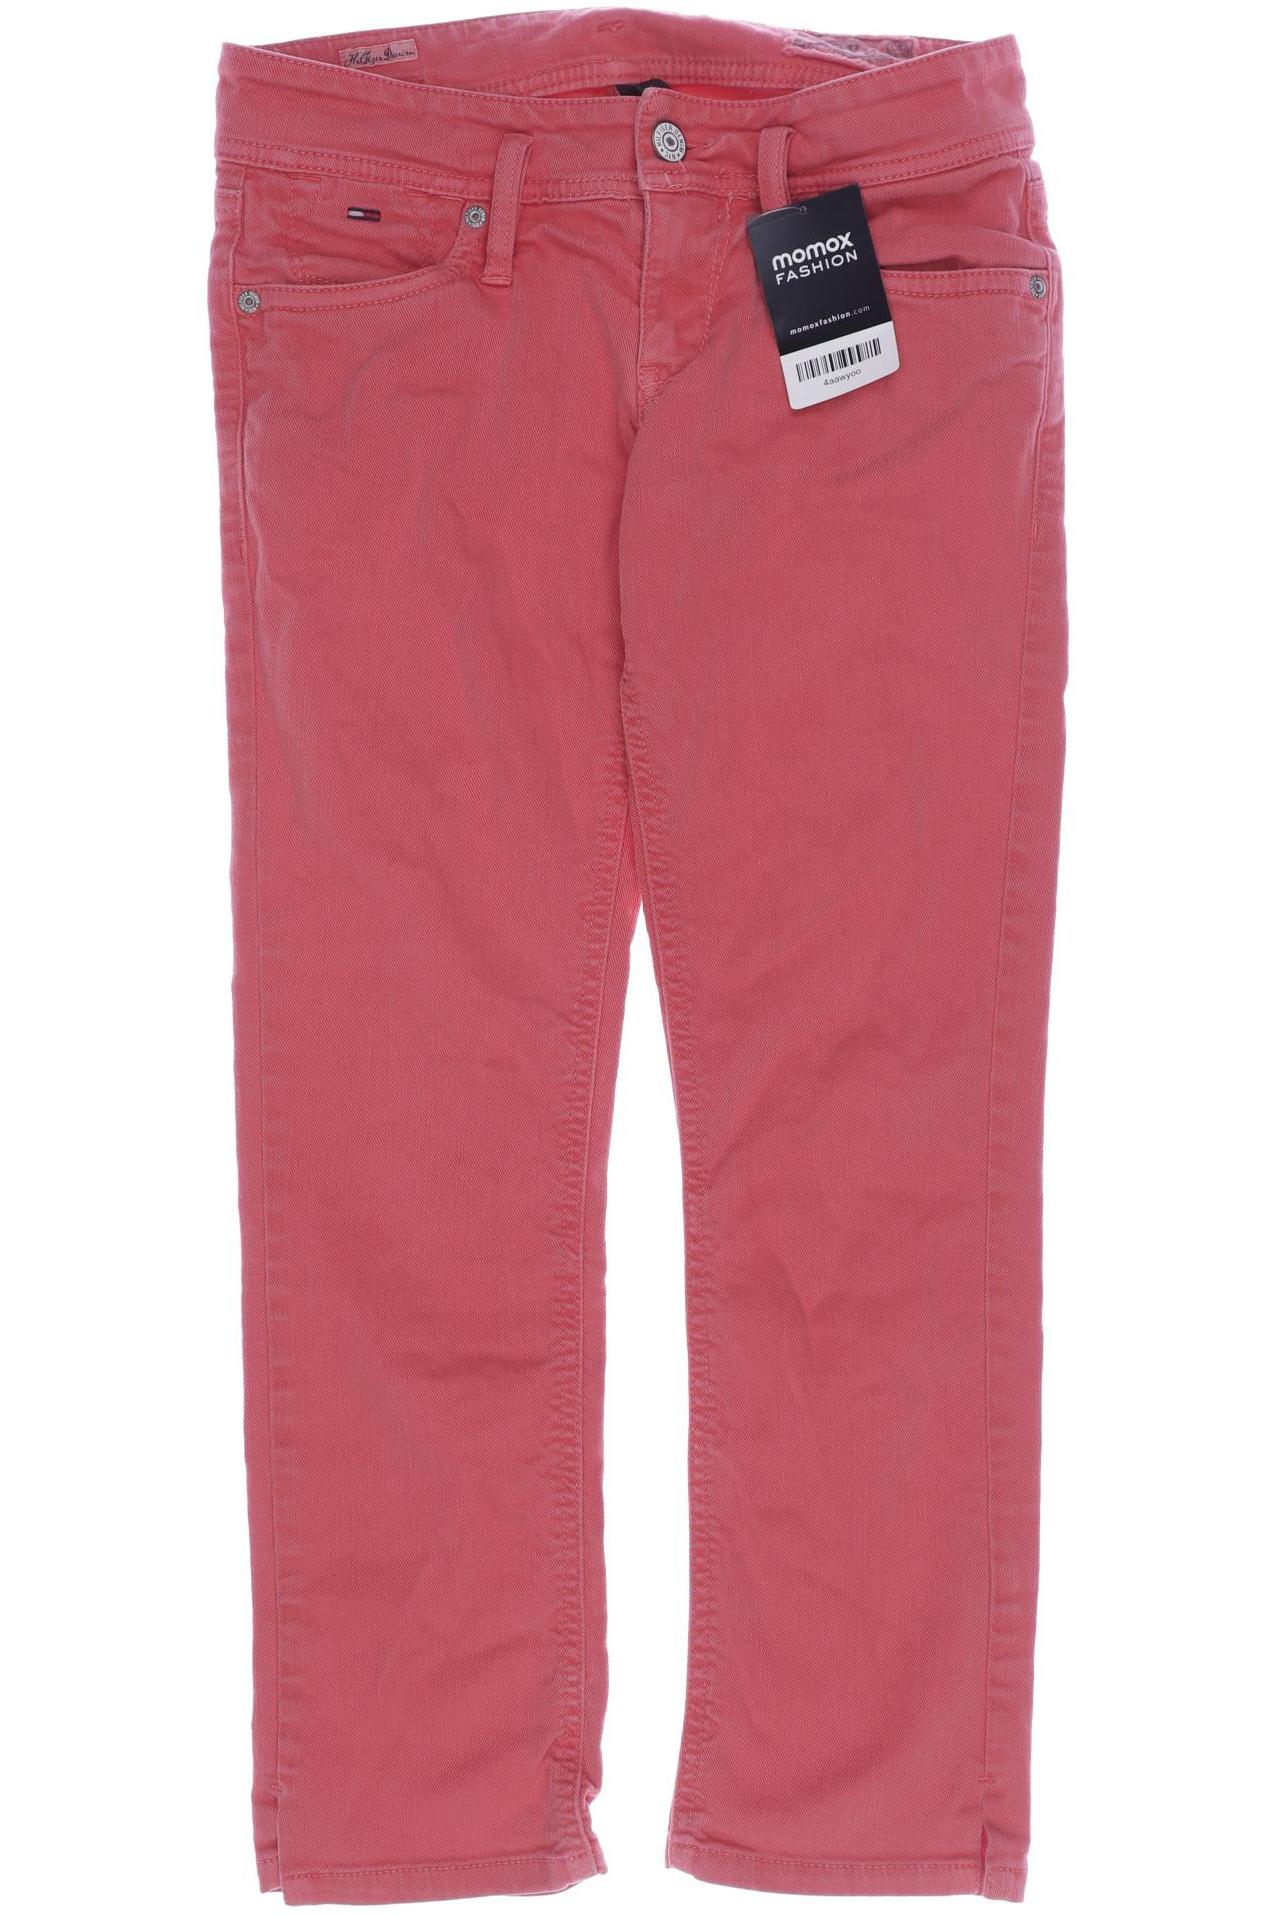 HILFIGER DENIM Damen Jeans, pink von Hilfiger Denim